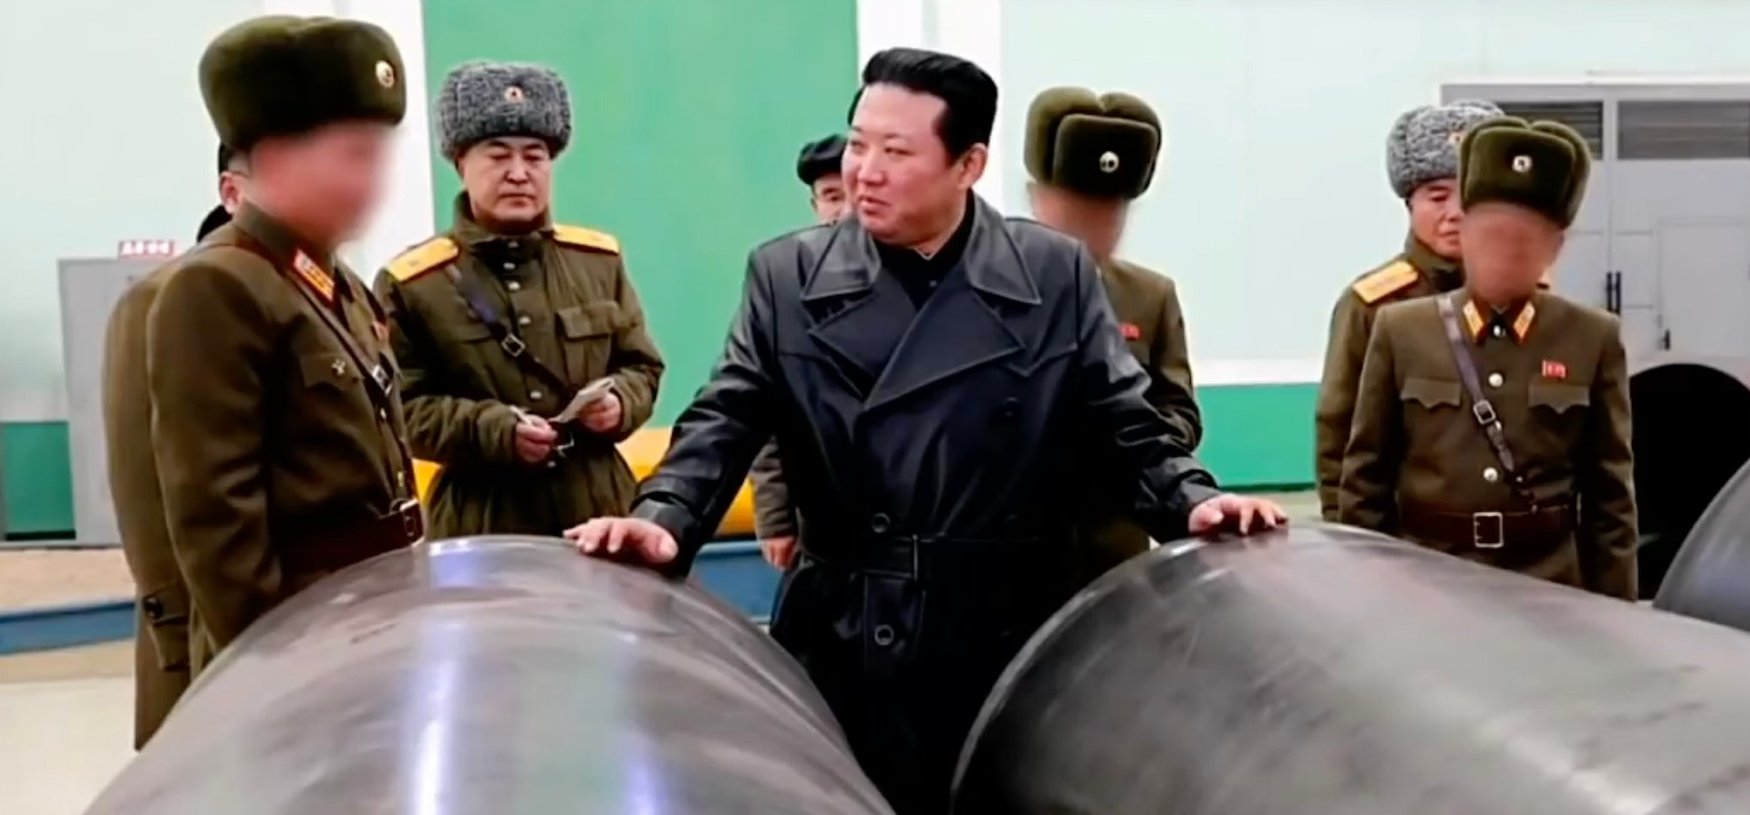 Megszólalt Kim Dzsongun is az ukrán helyzetről, már tényleg csak ő hiányzott a bajok tetejébe